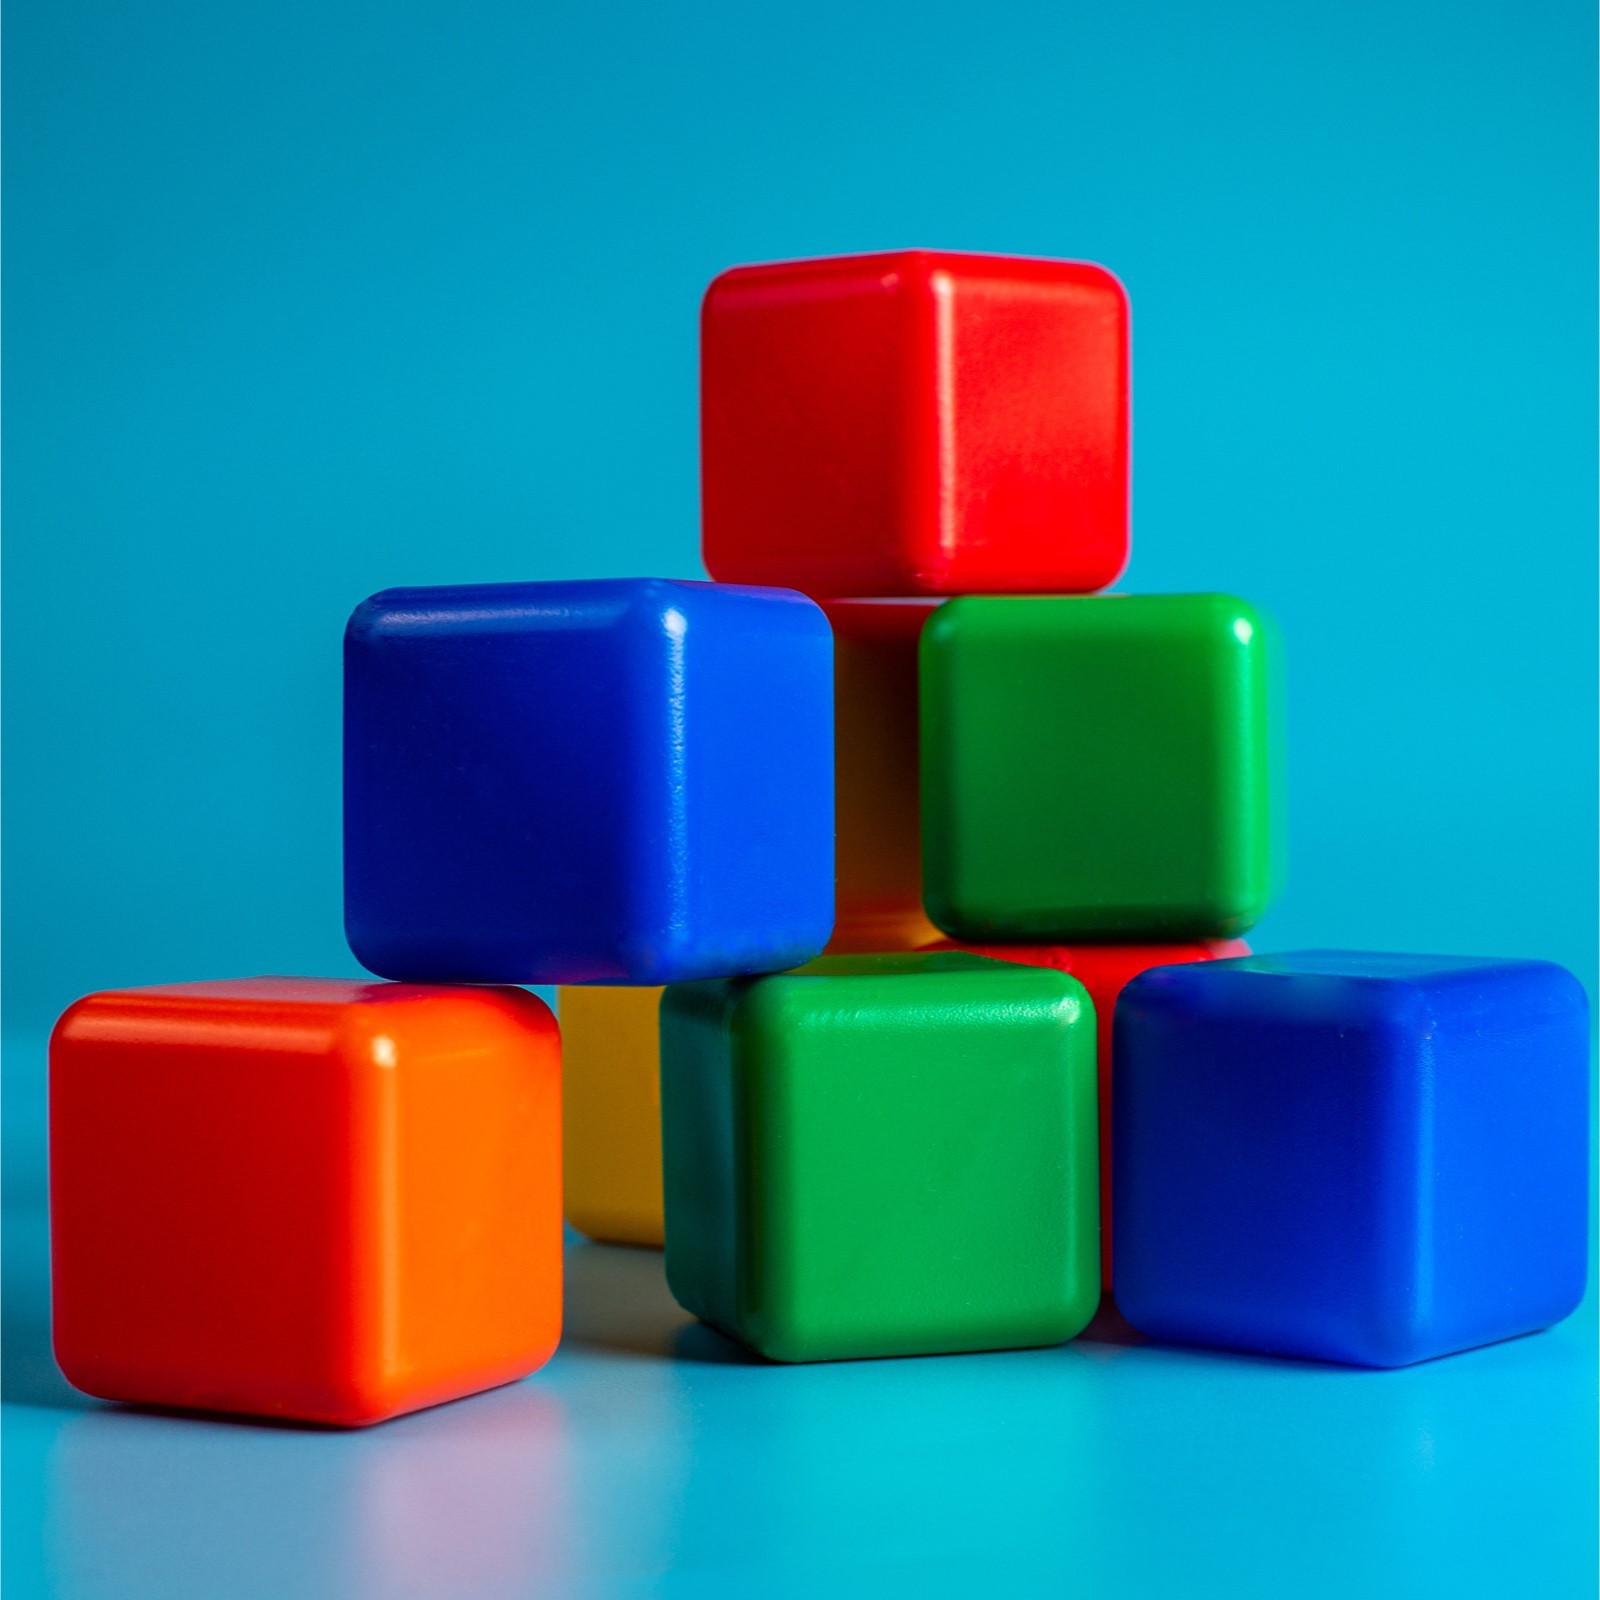 Кубики 9эл.VG 50158. Разноцветные кубики. Детские кубики. Яркие кубики для детей. Девять кубиков